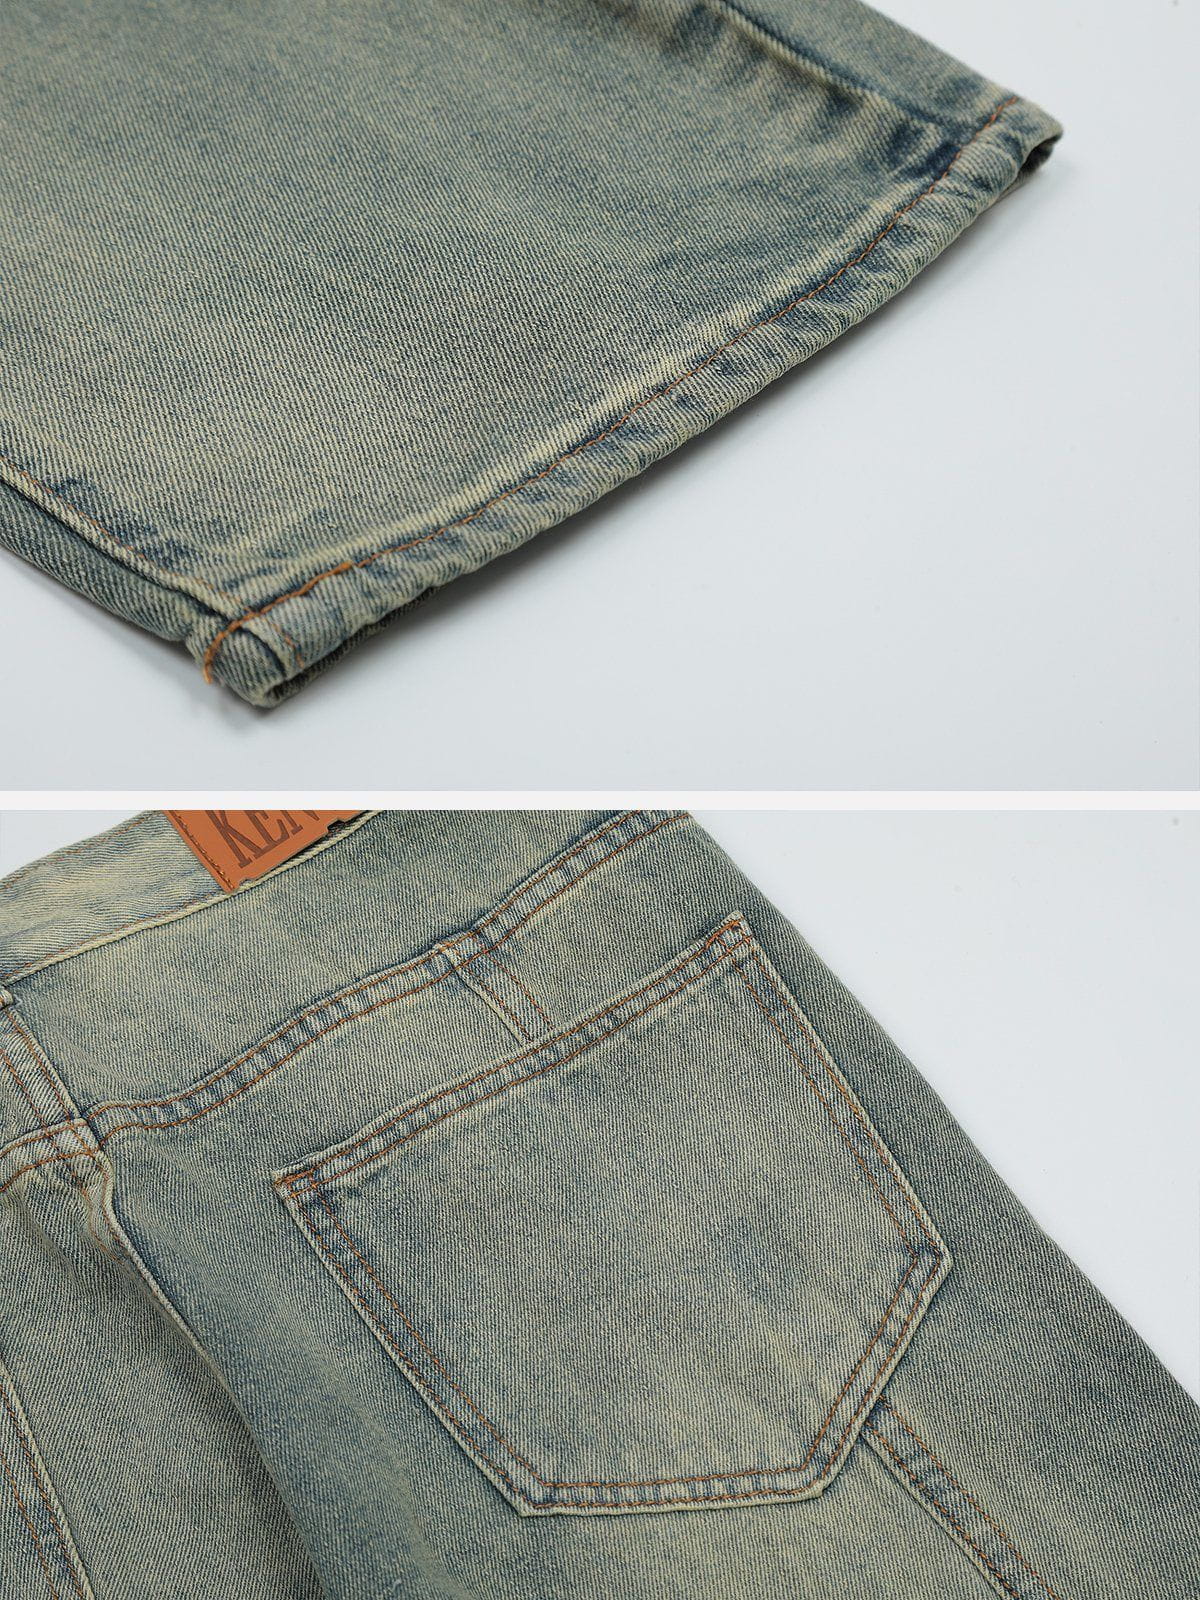 Eprezzy® - Multi-Pocket Wash Jeans Streetwear Fashion - eprezzy.com